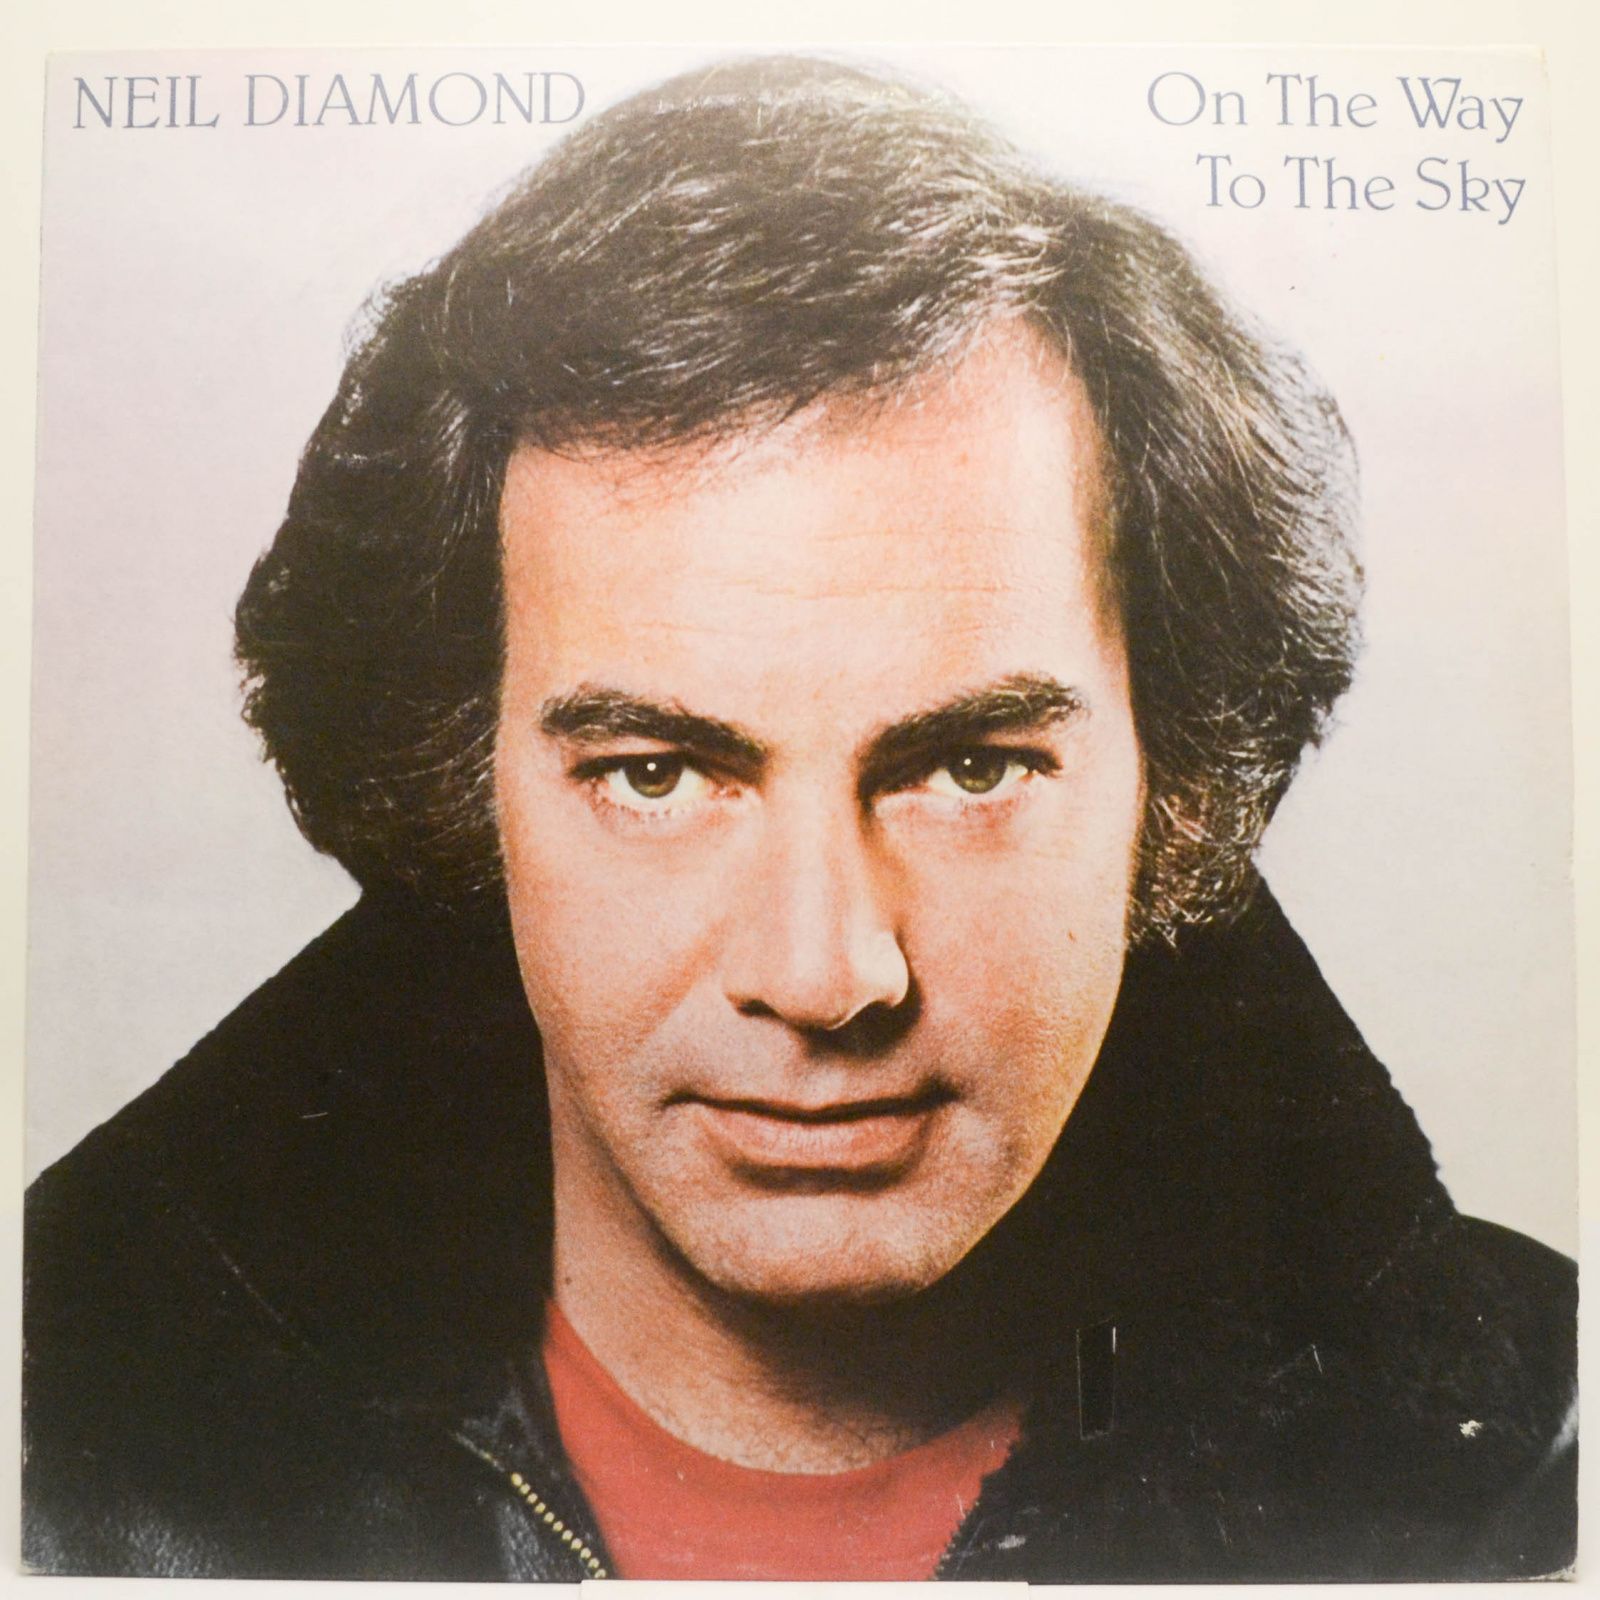 Neil Diamond — On The Way To The Sky, 1981